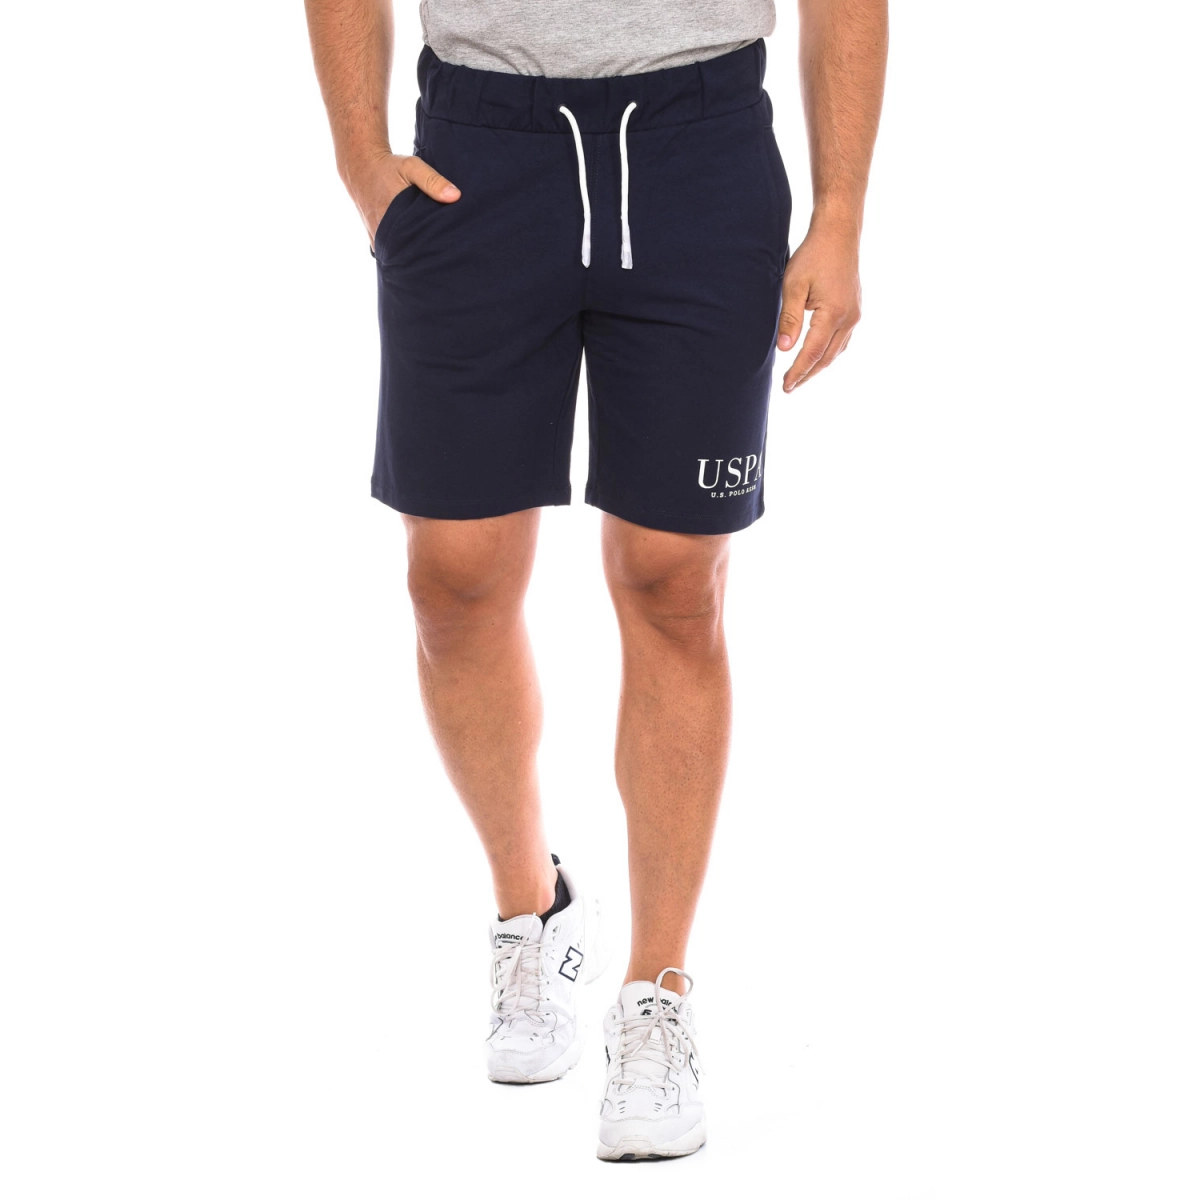 Pantalón corto deportivo U.S. POLO ASSN. 67935 hombre Talla: XL Color: Azul